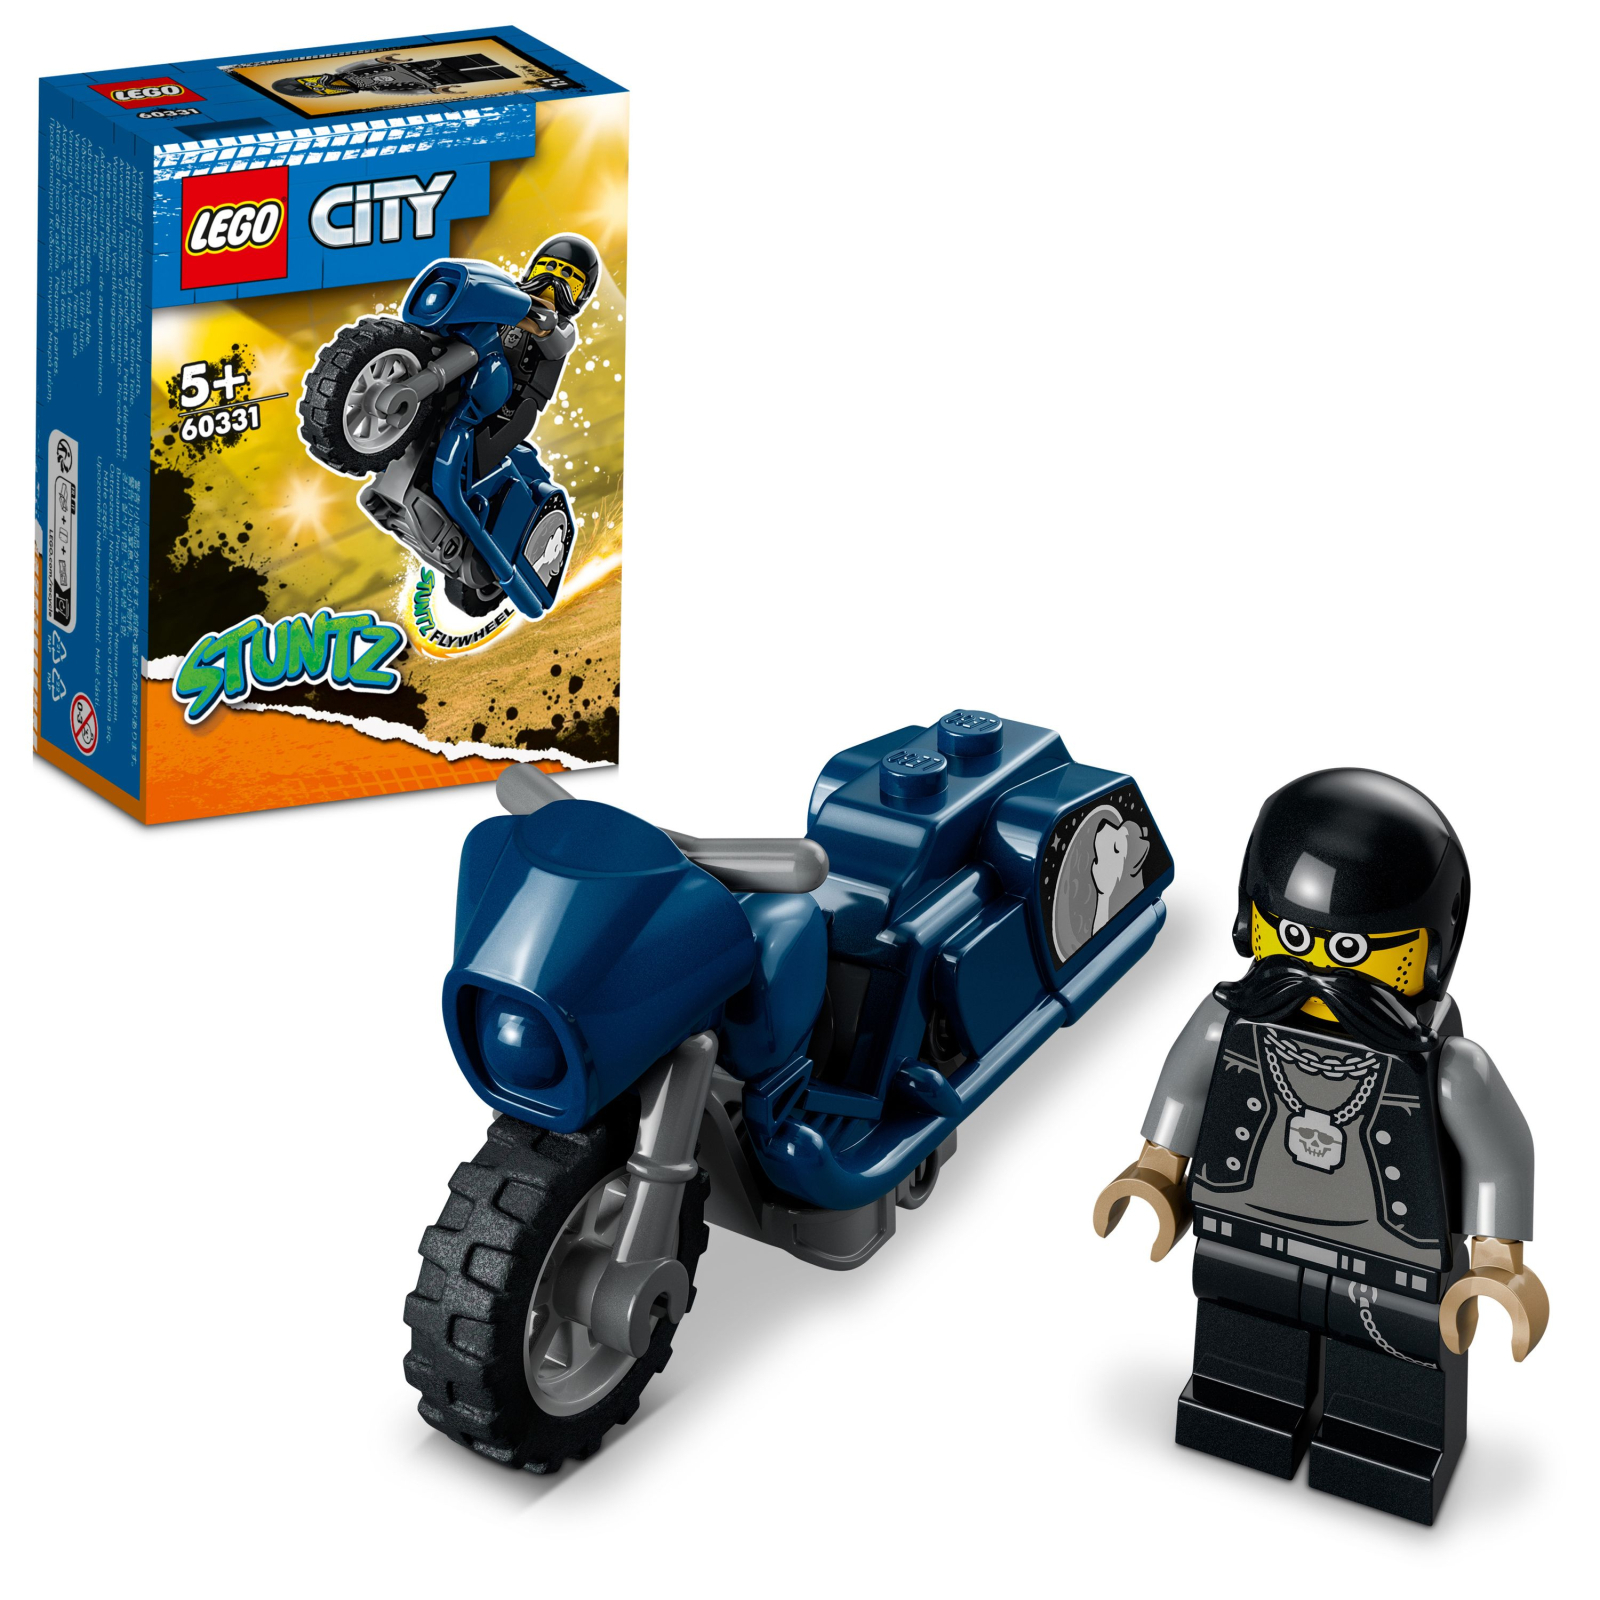 Конструктор LEGO City Stuntz Туристический каскадерский мотоцикл 10 деталей (60331) изображение 2